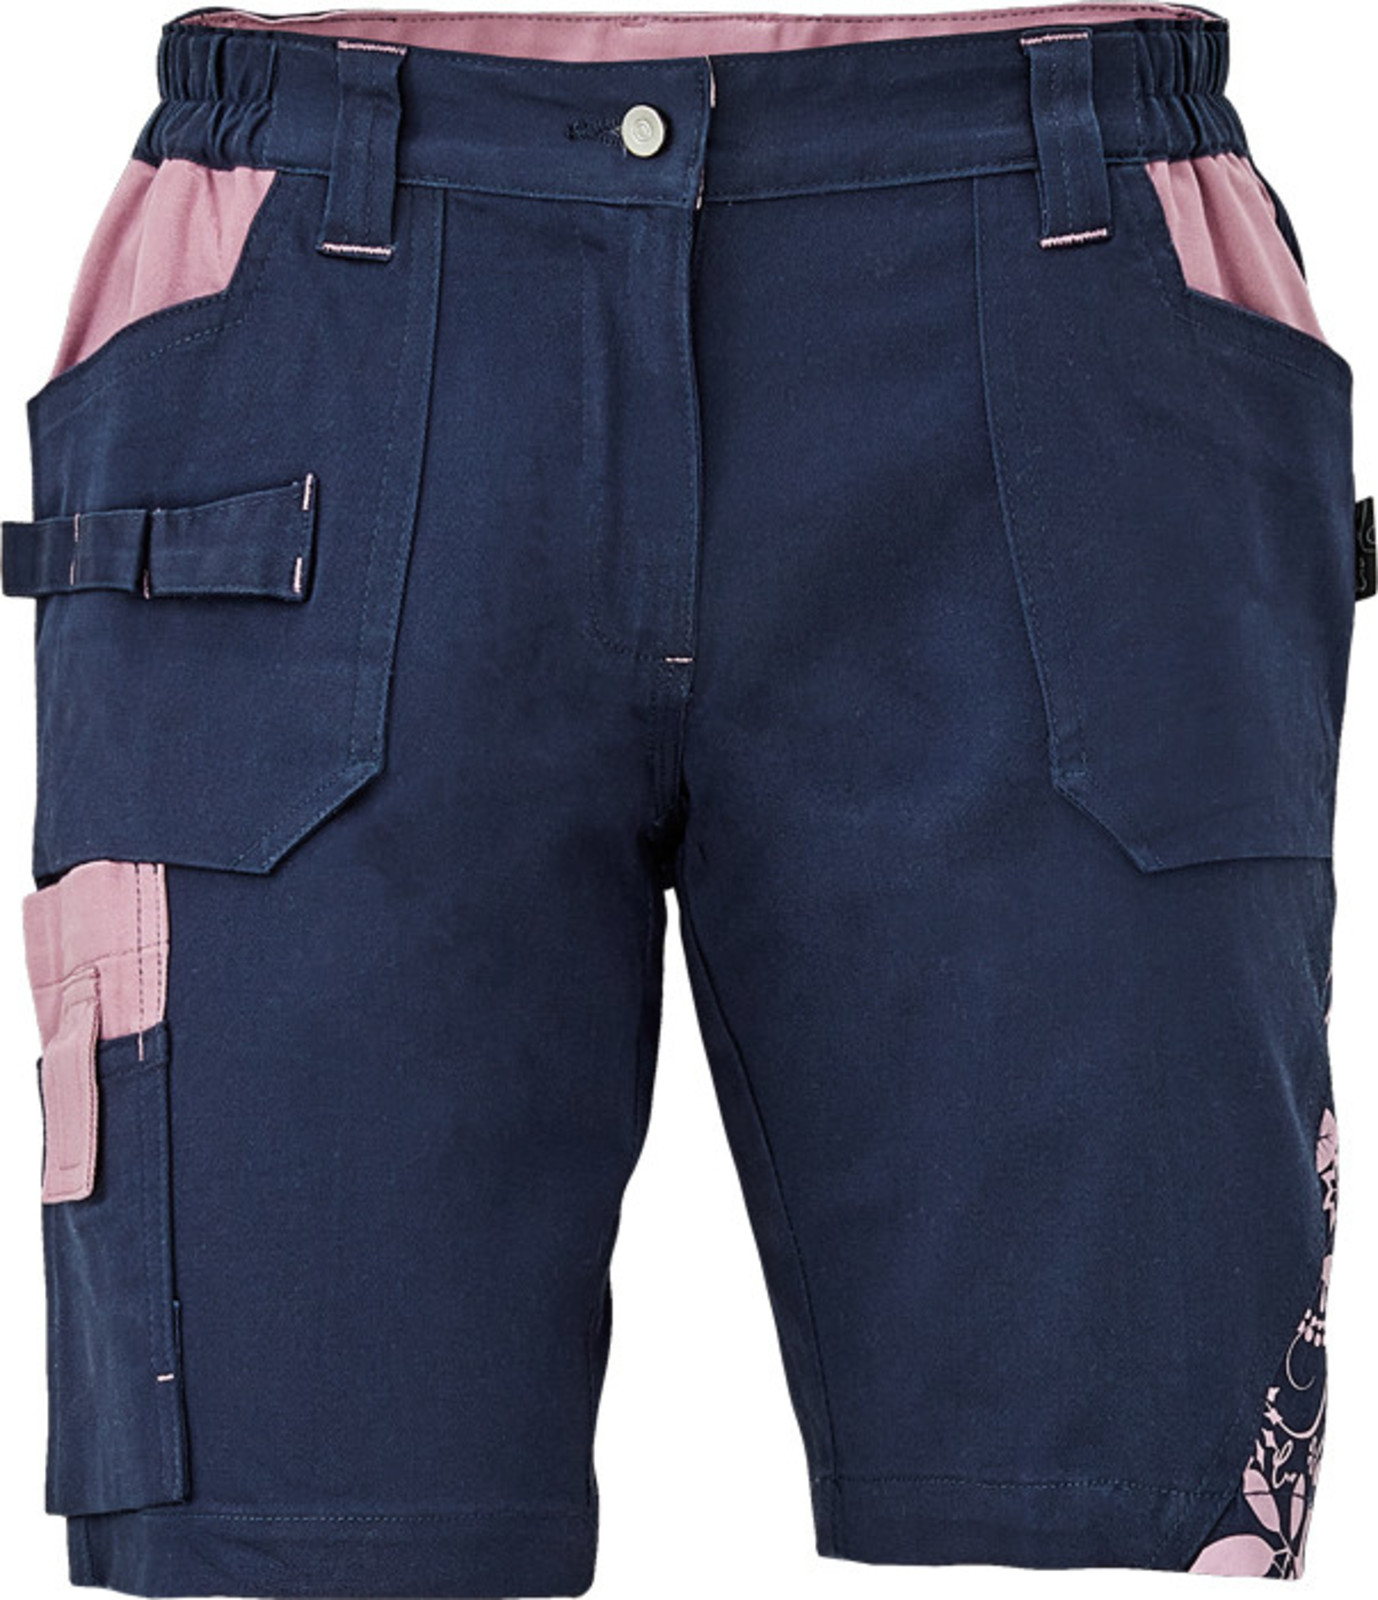 Dámske pracovné šortky Cerva Yowie - veľkosť: 38, farba: navy/fialová